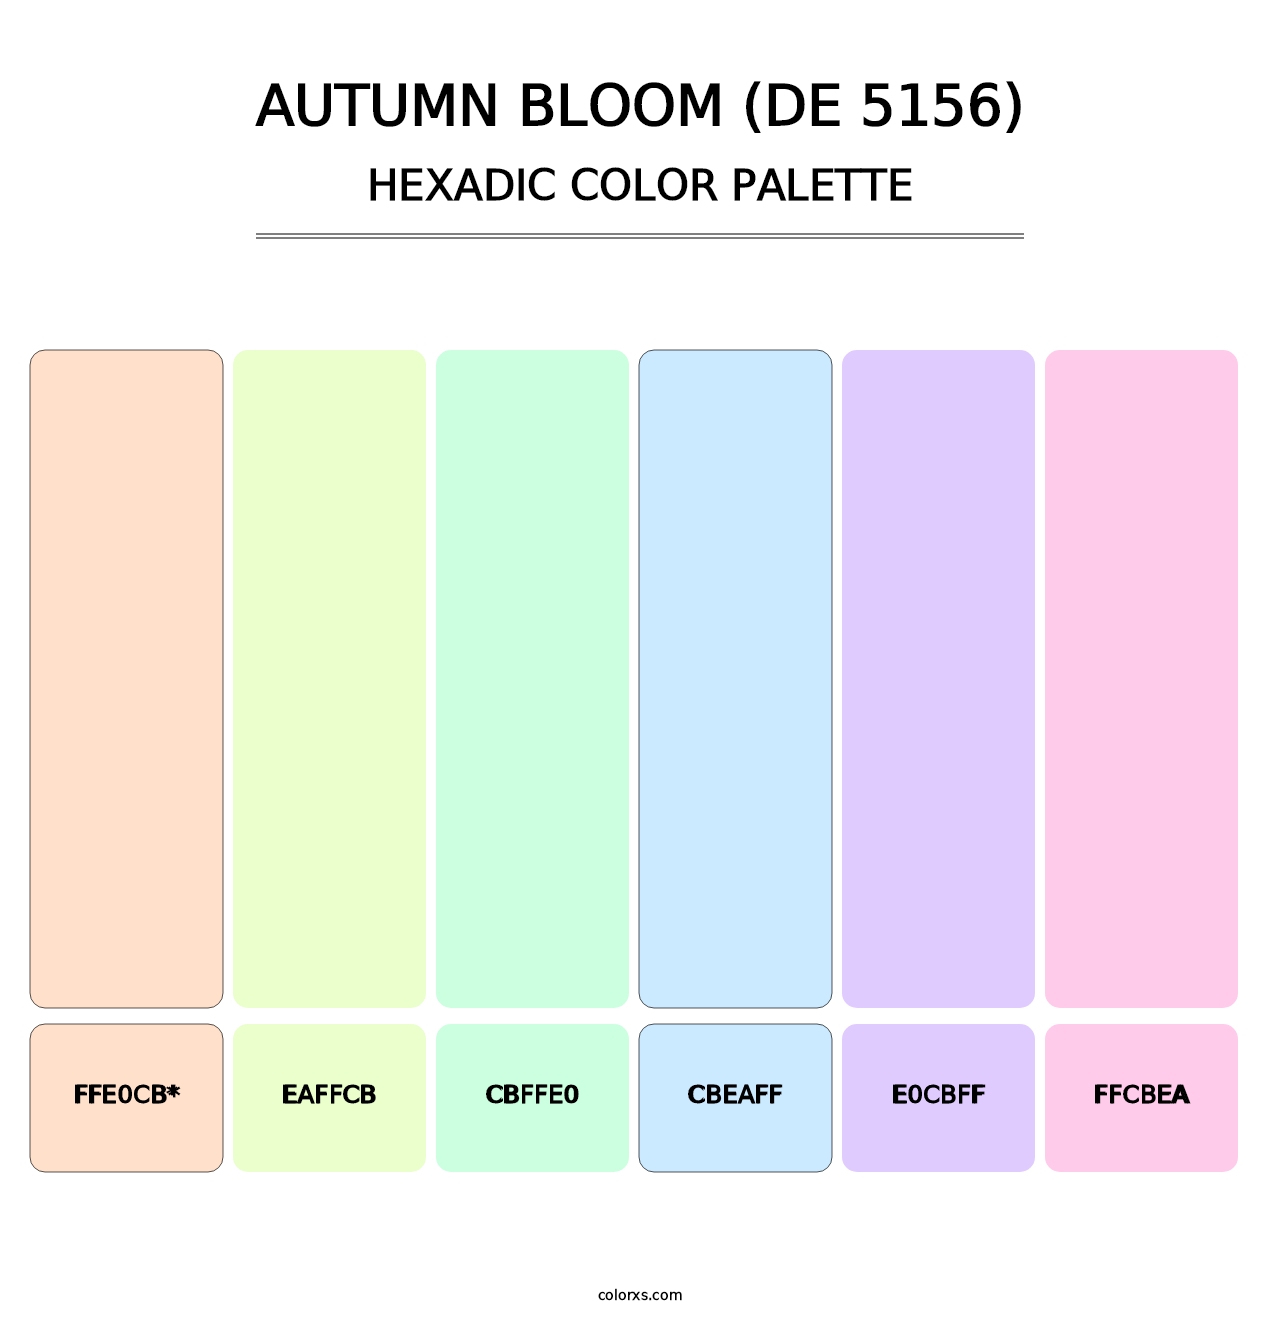 Autumn Bloom (DE 5156) - Hexadic Color Palette